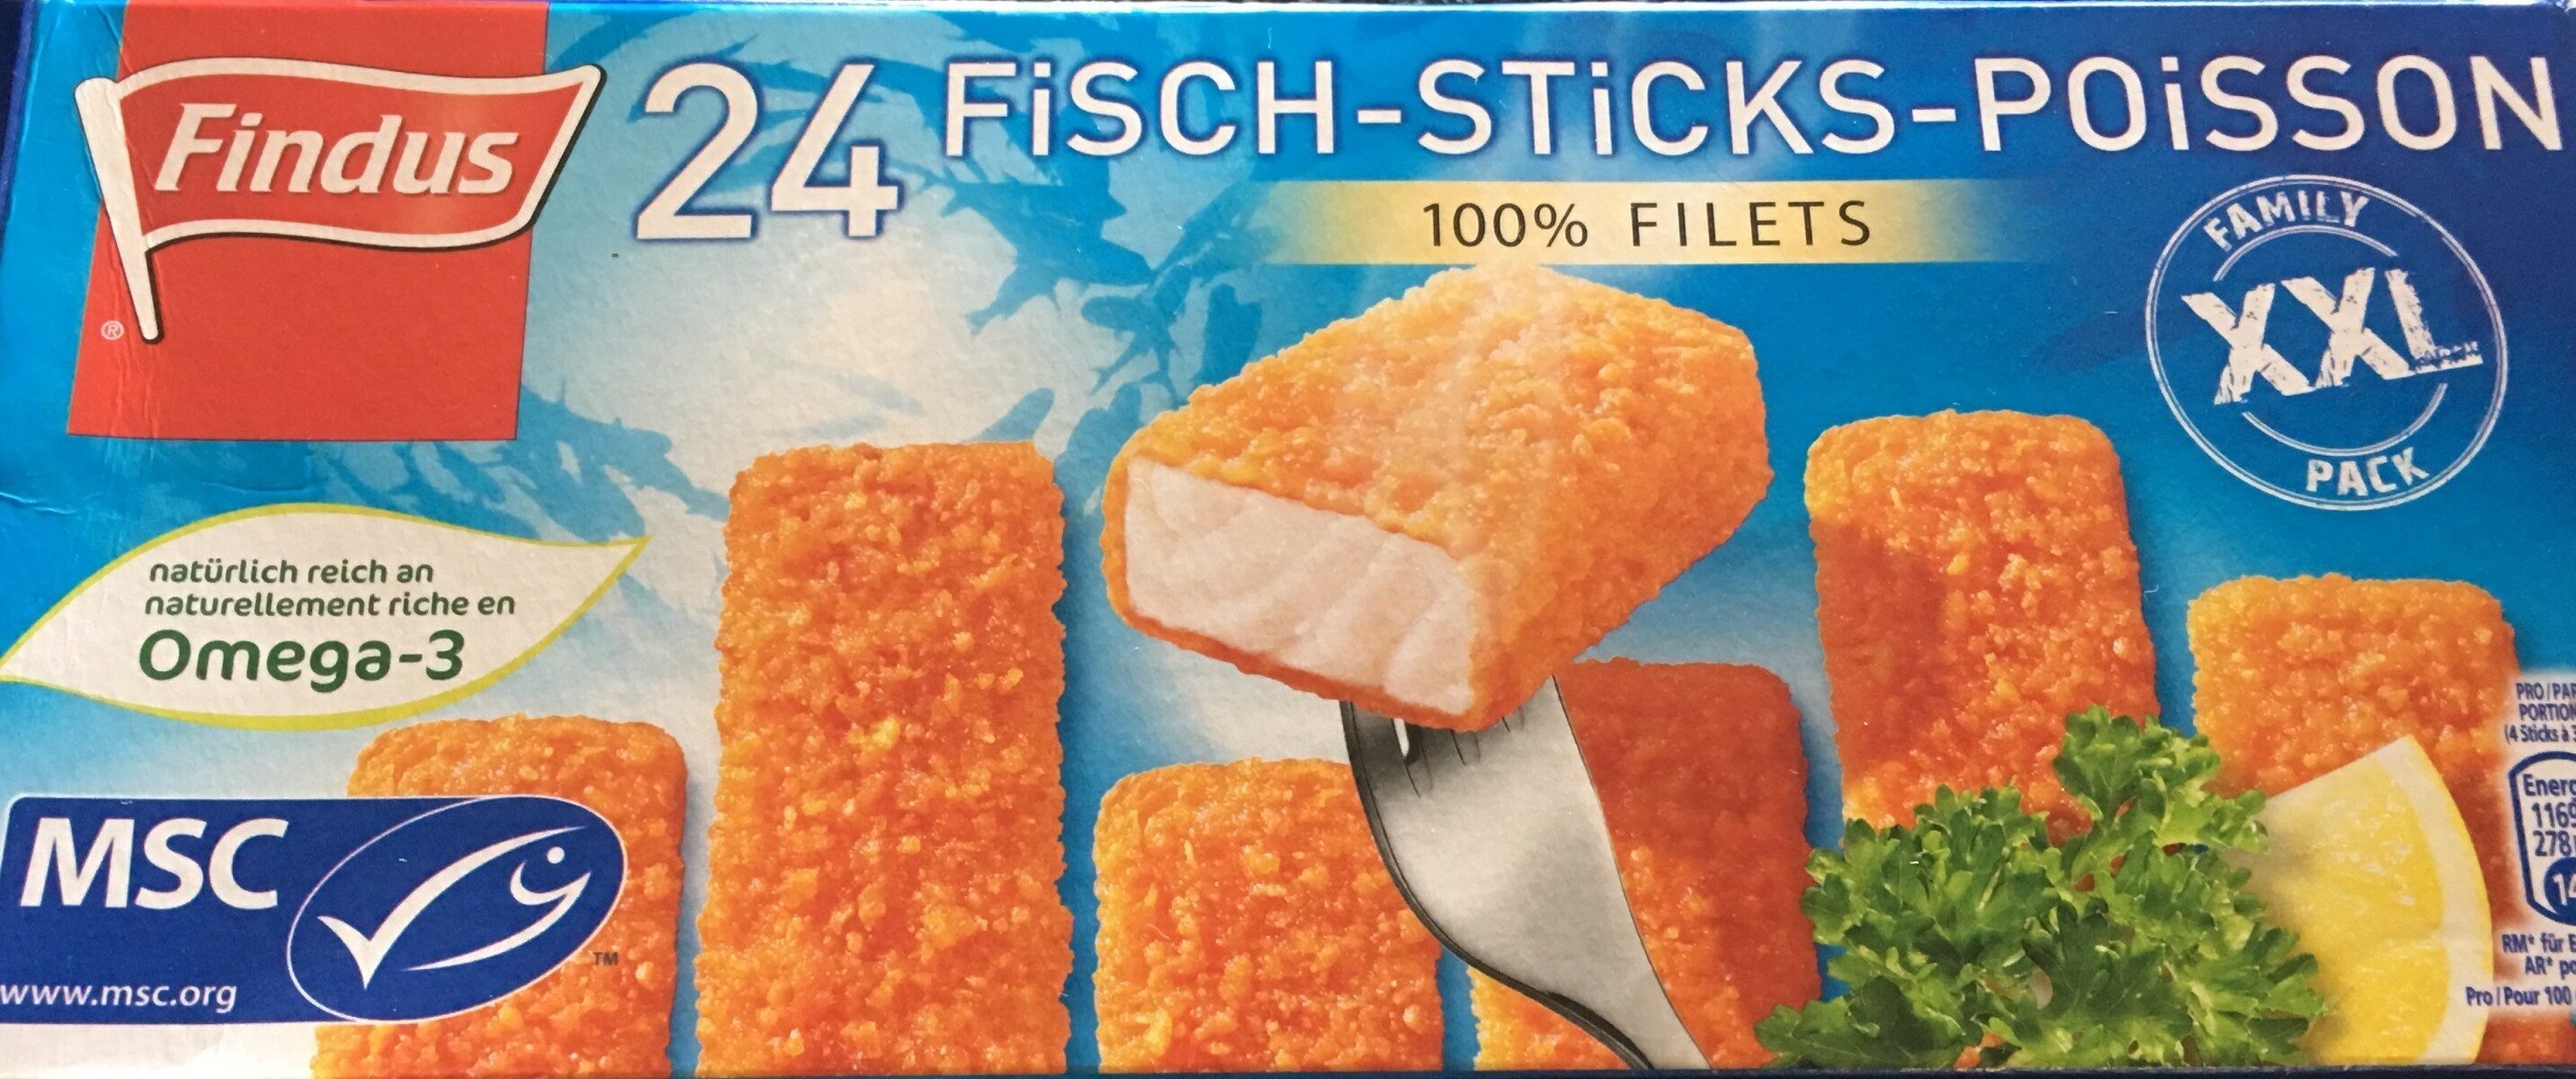 sticks poisson - Prodotto - fr